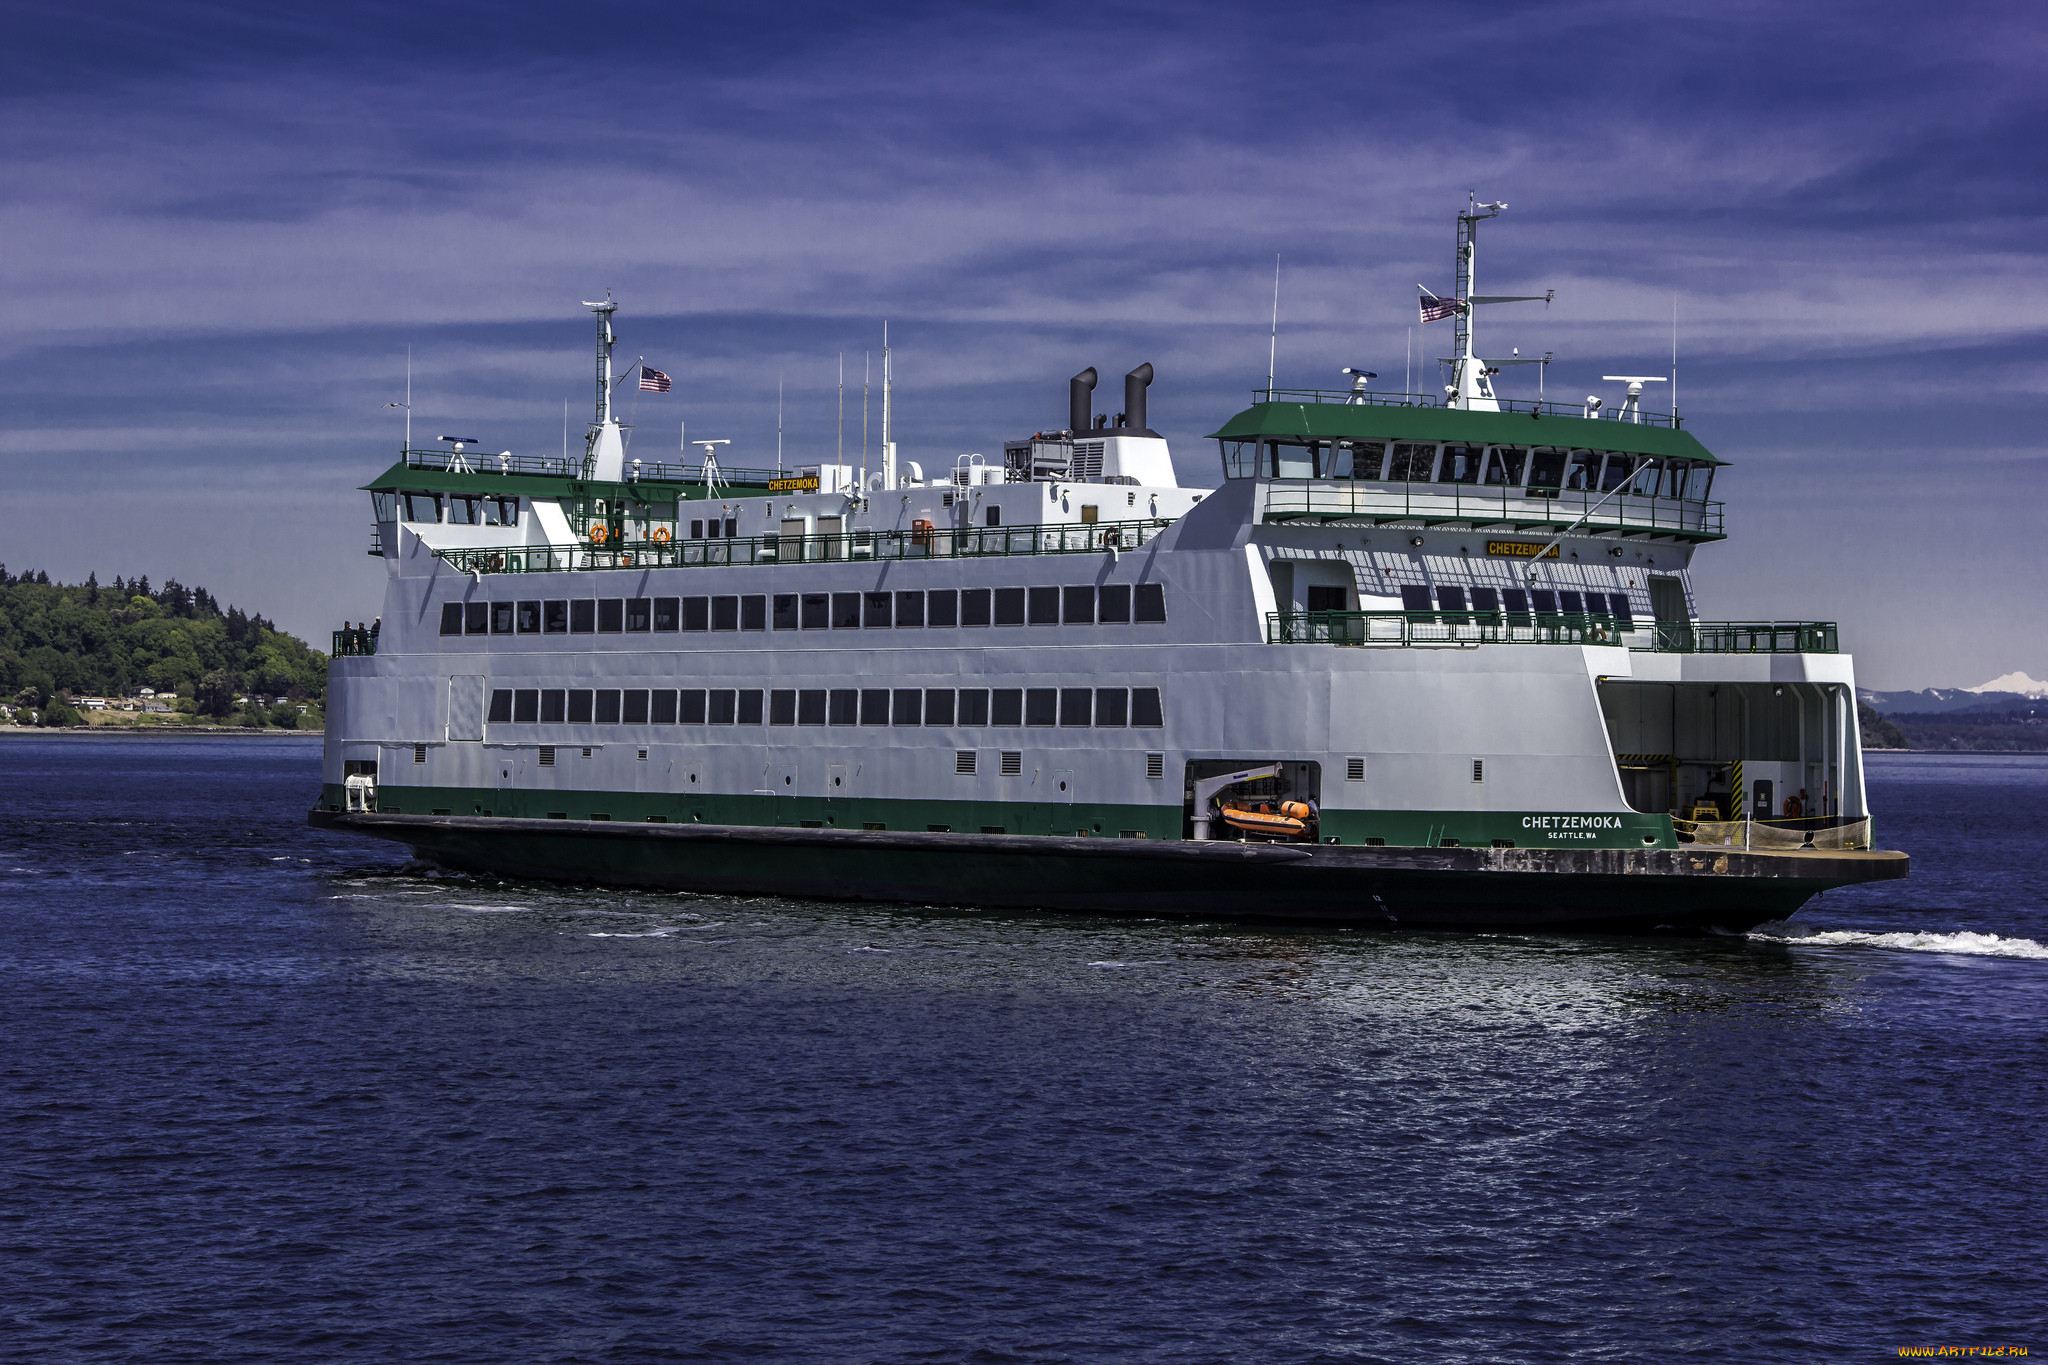 Друг суда. Washington State Ferries. Торговые фирмы и водные суда. Судно на воде на букву г. Ferry Vessel Apollonia.